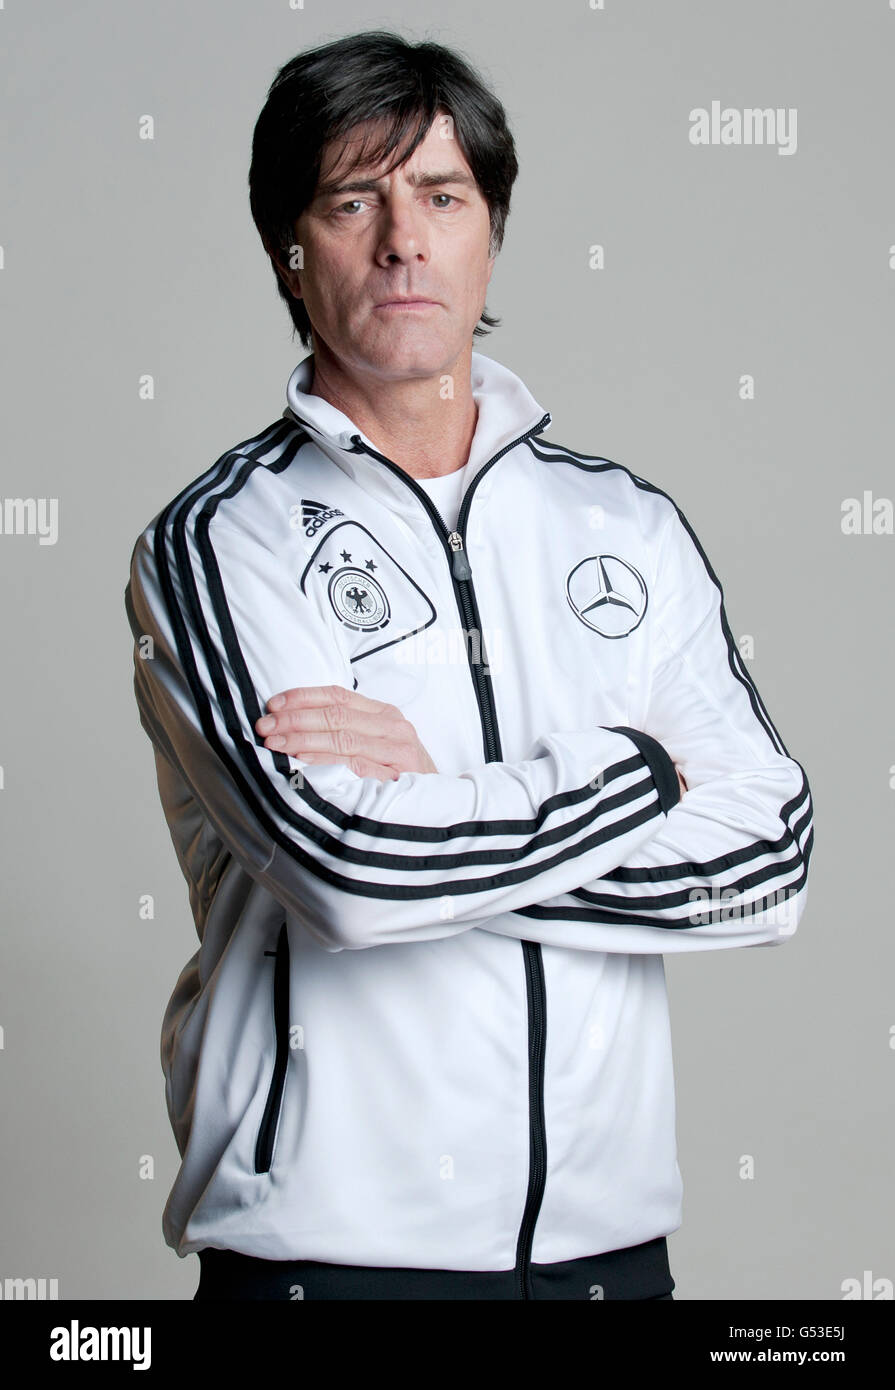 Joachim Loew, Manager der deutschen Fußball-Nationalmannschaft bei der offizielle Porträt-Foto-Session für die deutschen Männer national Stockfoto